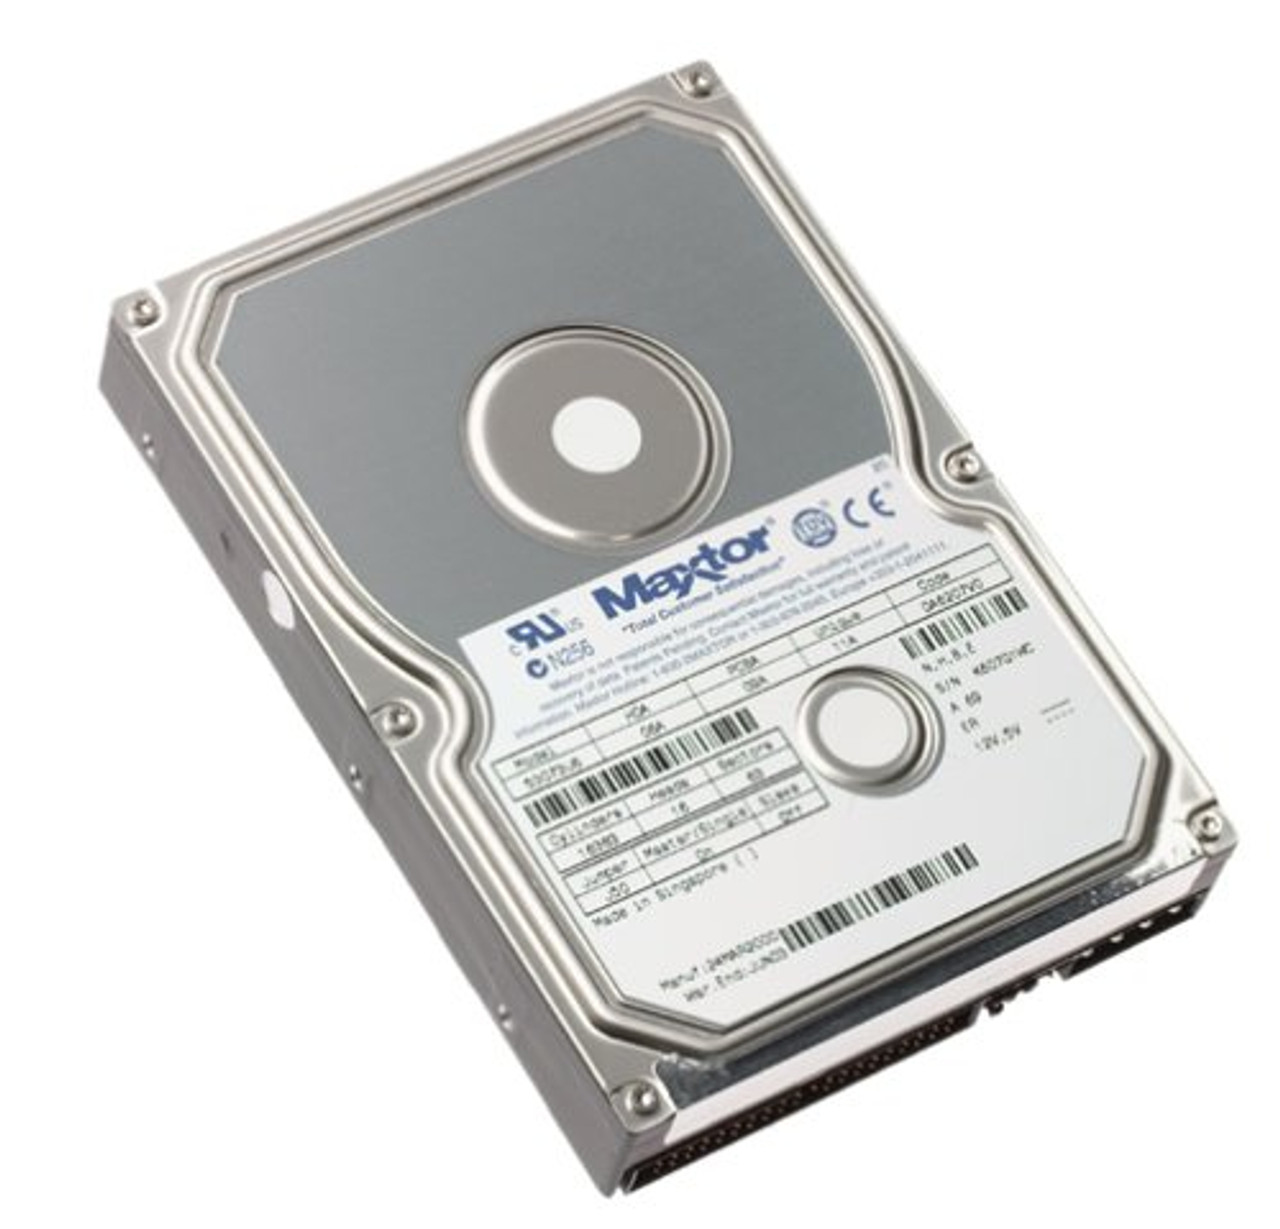 ST0153000U - Seagate 30 GB 3.5 Internal Hard Drive - IDE Ultra ATA/66 (ATA-5) - 7200 rpm - 2 MB Buffer